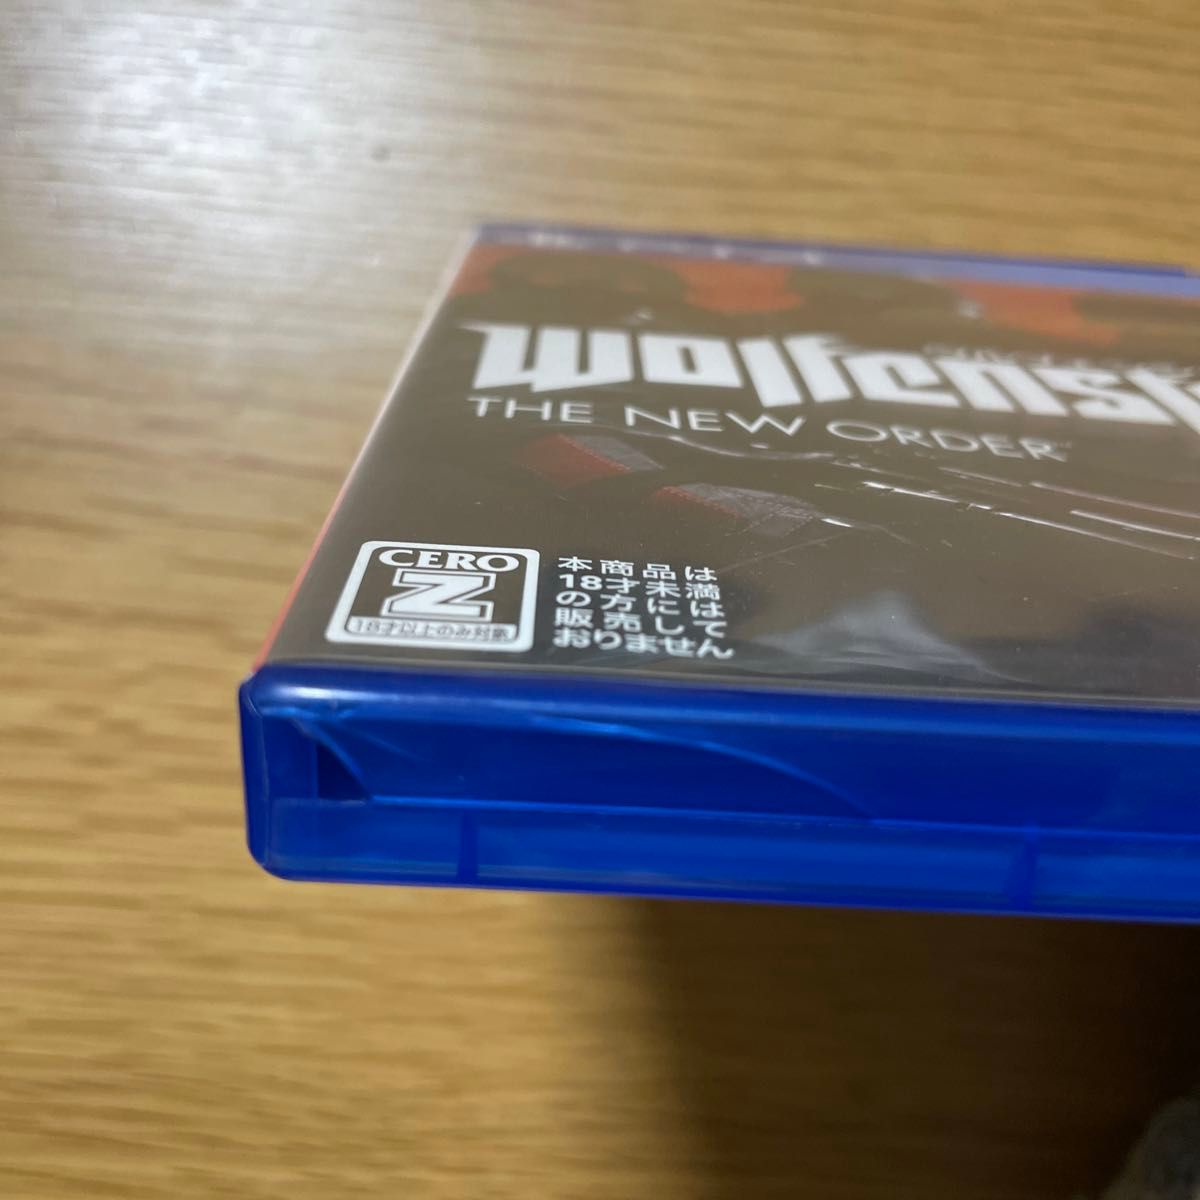 【PS4】 ウルフェンシュタイン:ザ ニューオーダー